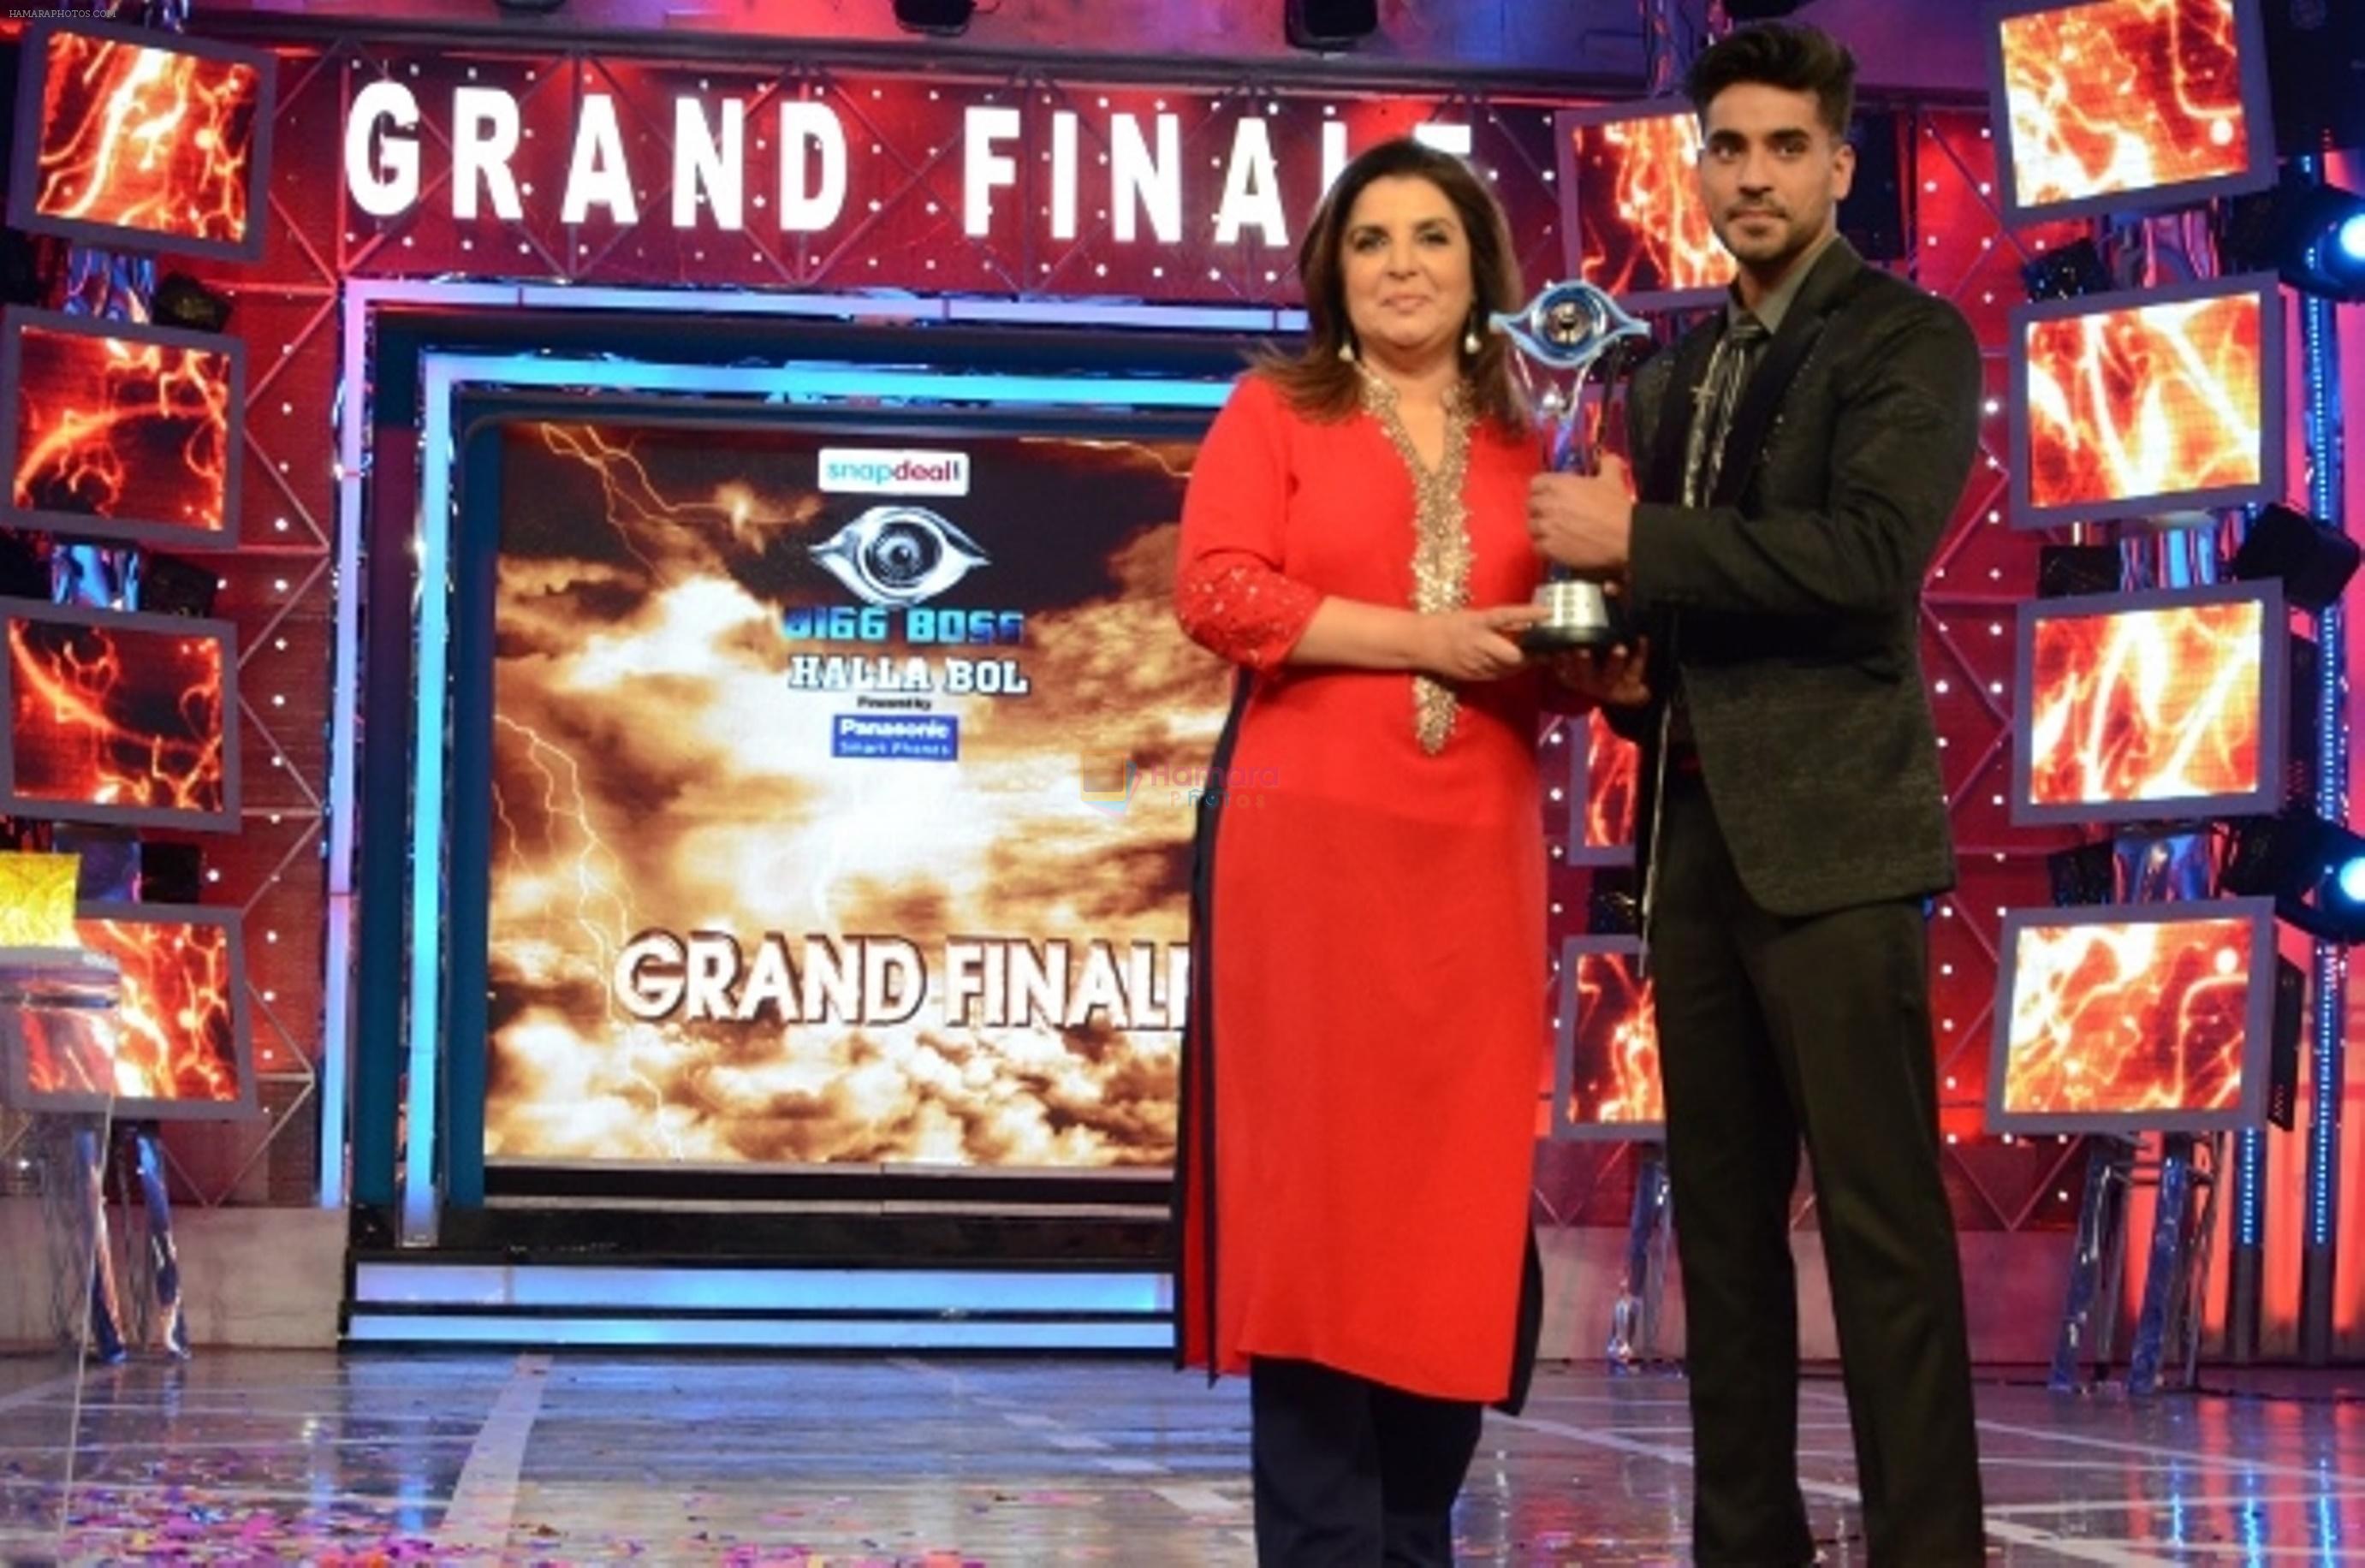 Farah Khan with Bigg Boss Season 8 winner Gautam Gulati